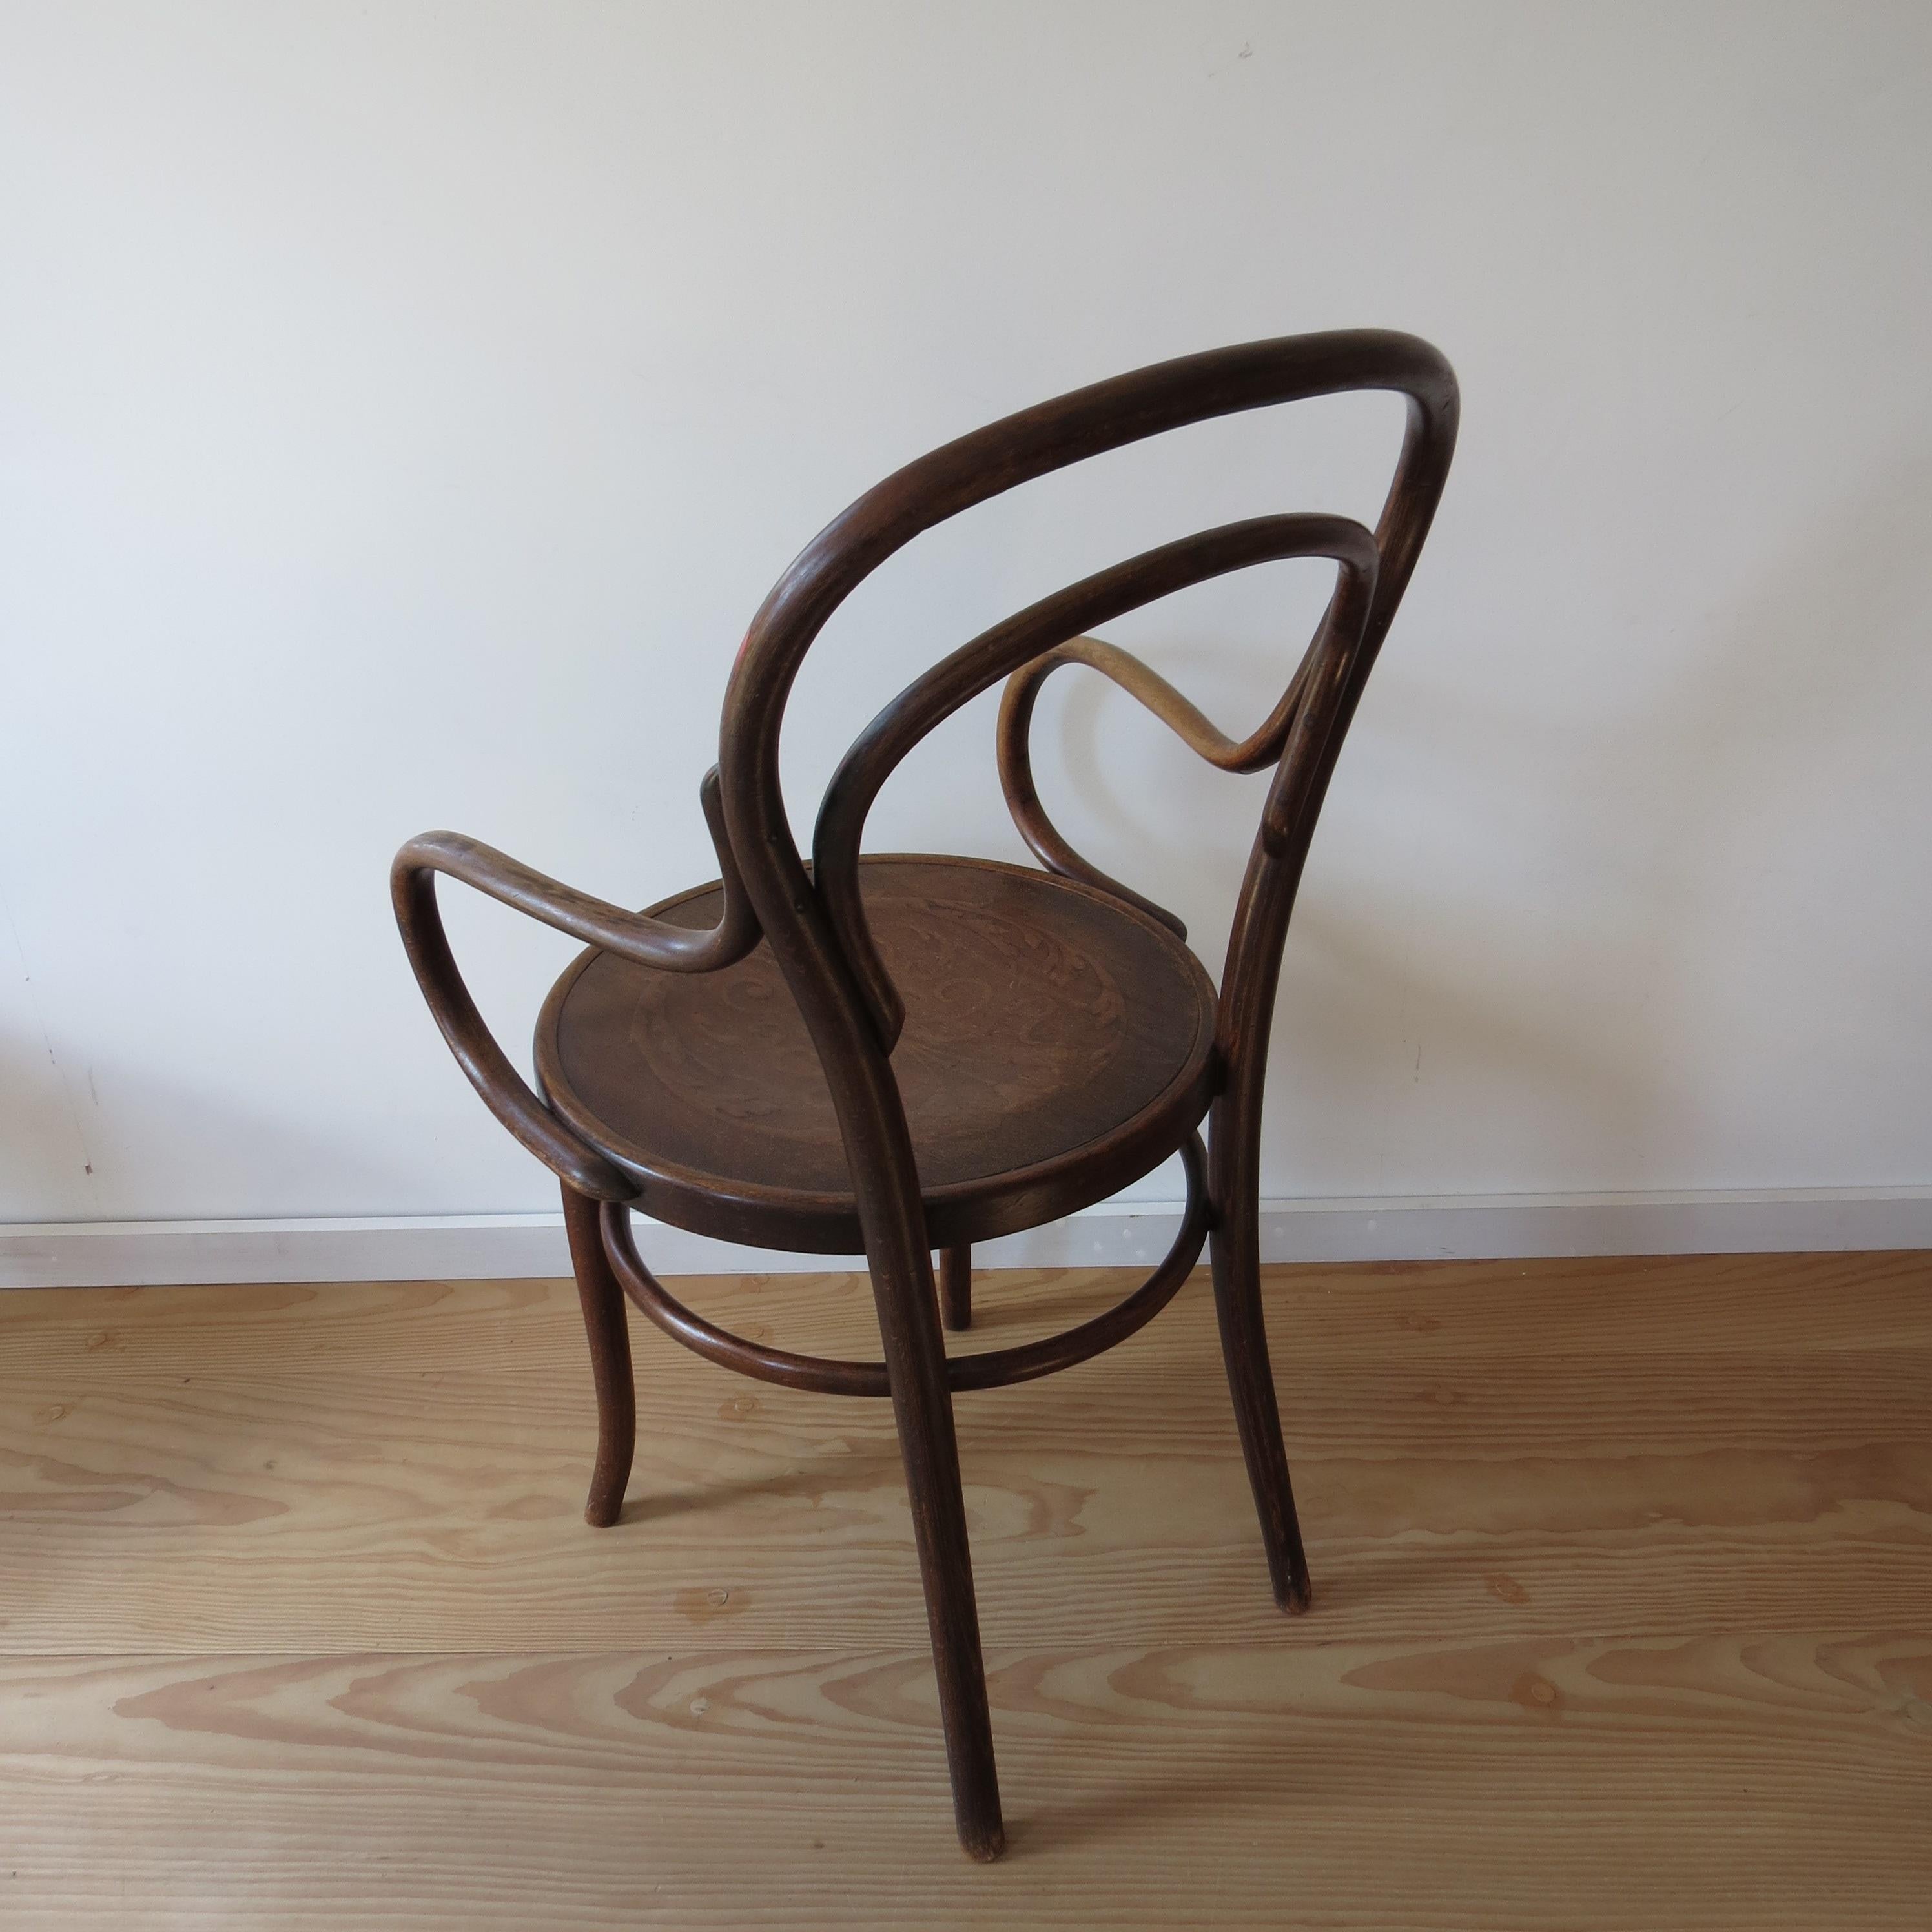 Antique Bentwood Chair No 14 by Thonet 19th Century Art Nouveau 2